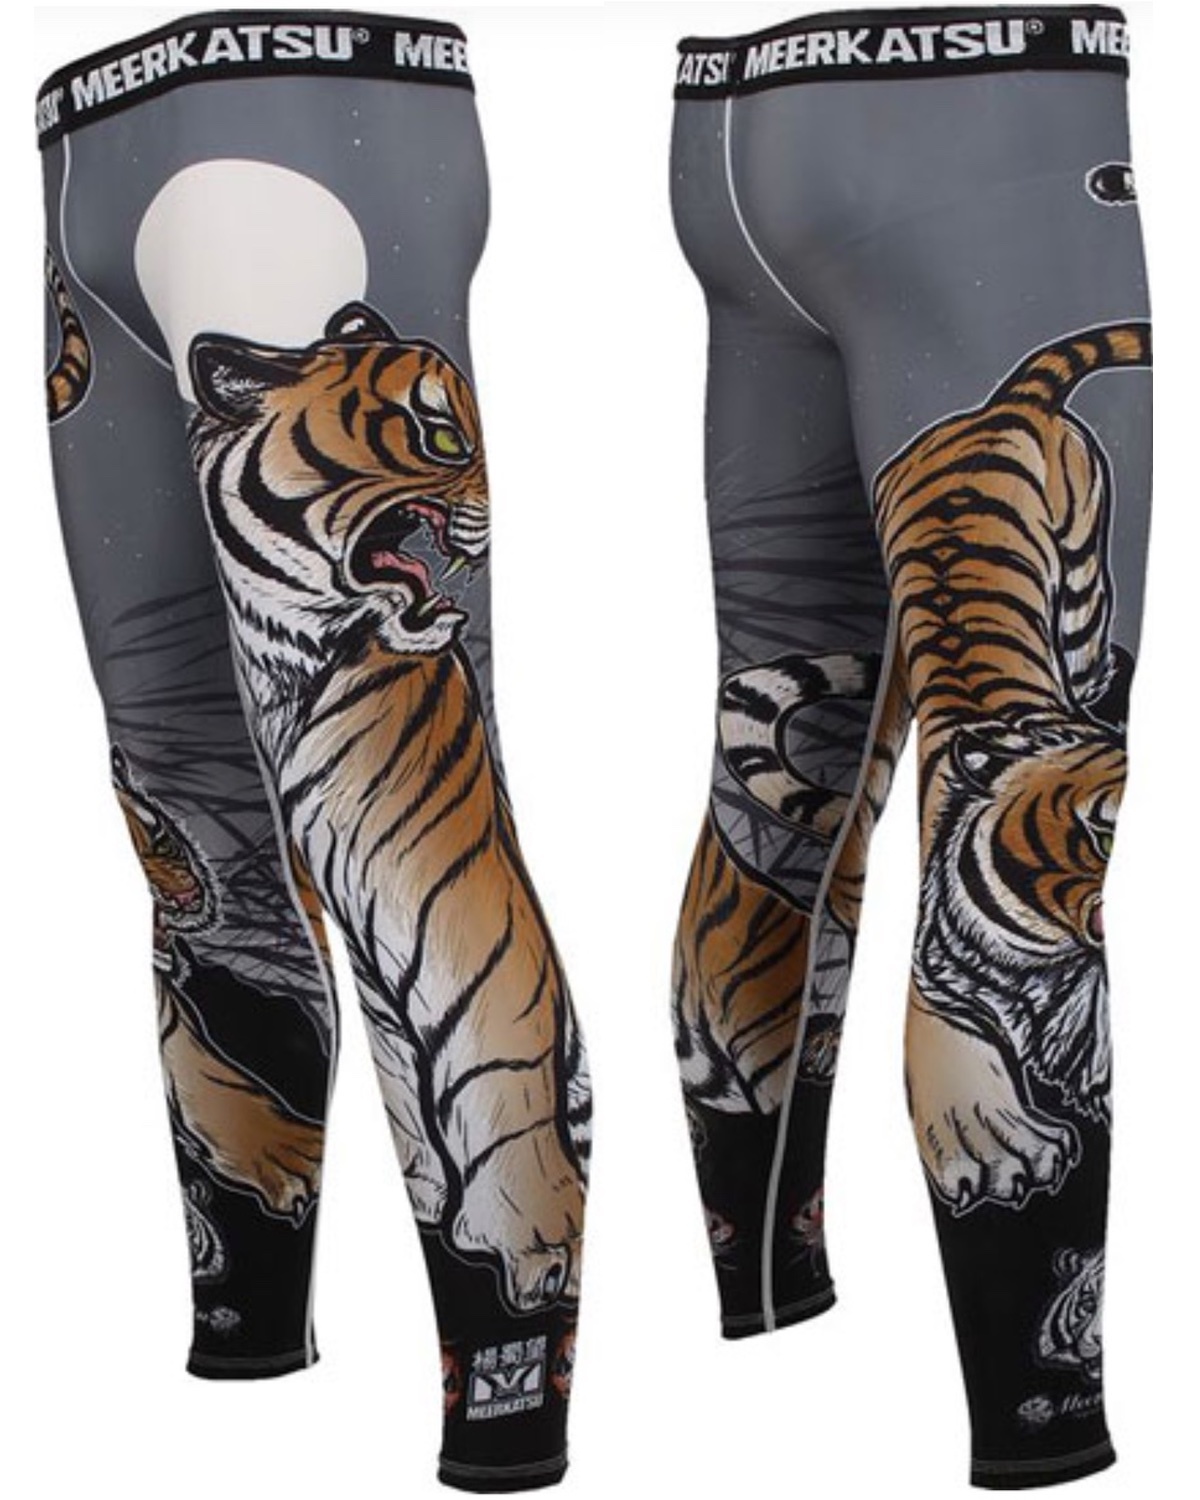 Meerkatsu Midnight Tiger Grappling Sports Legging Tights